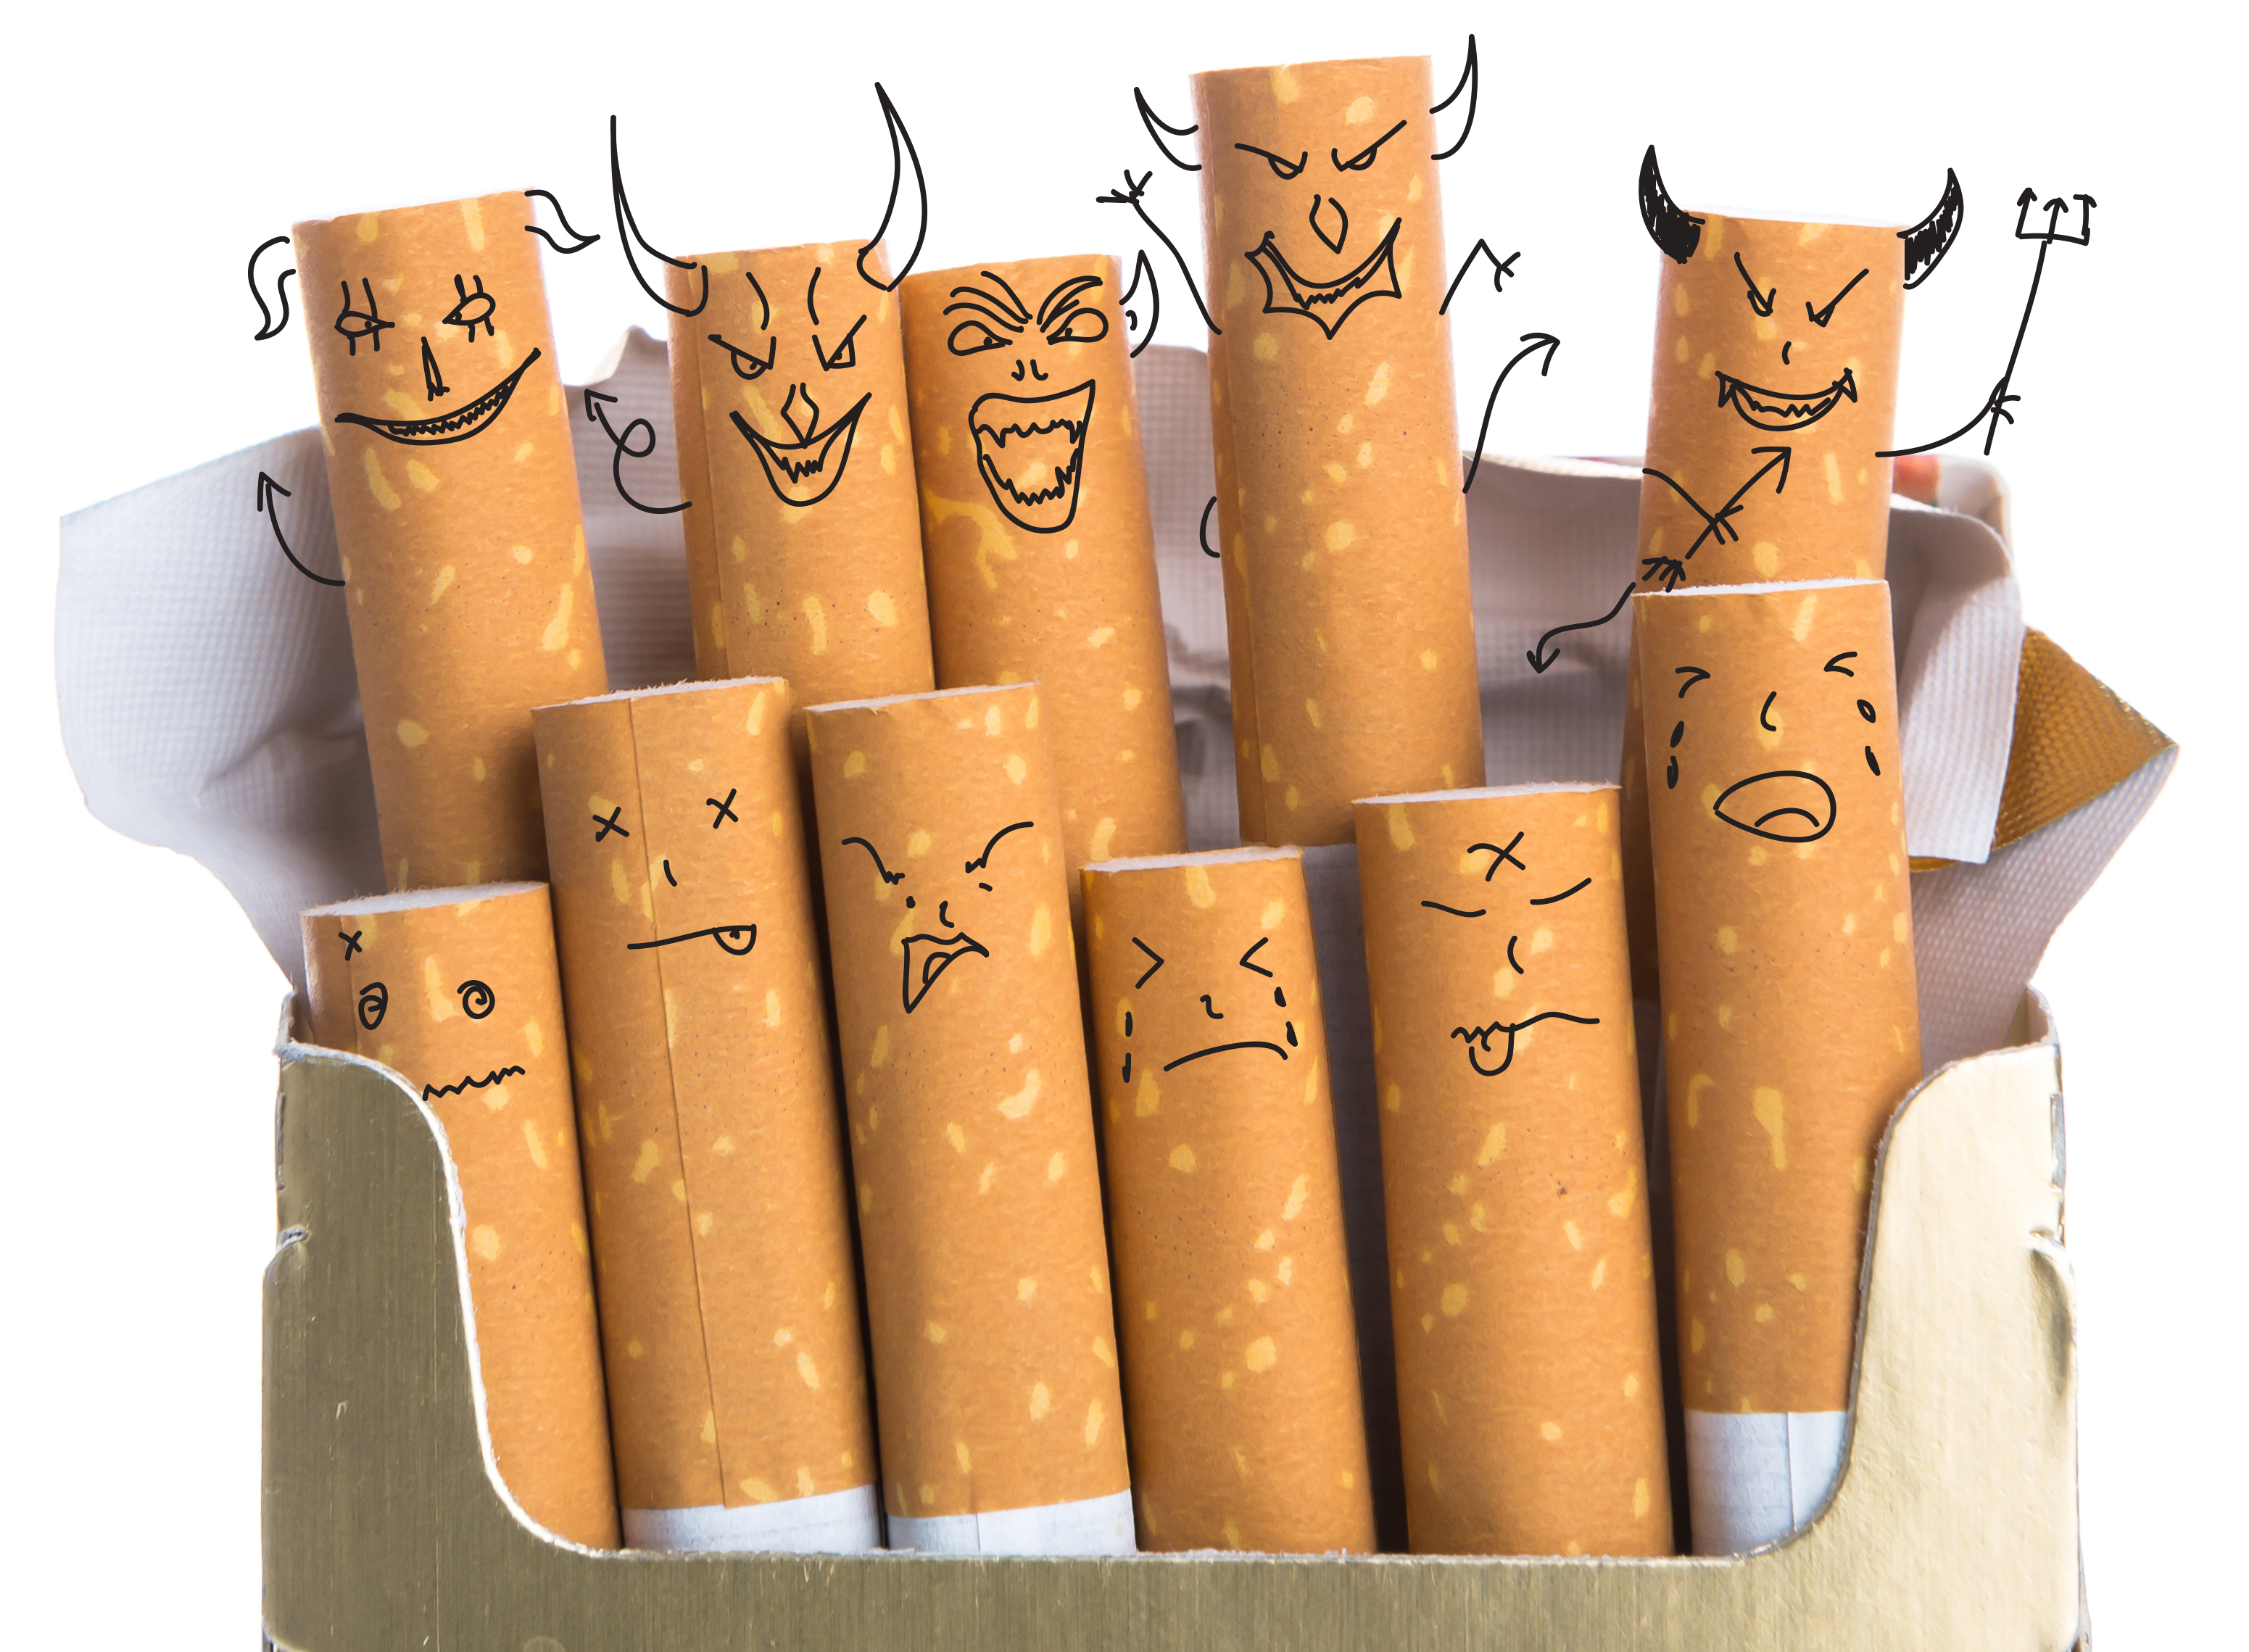 Arte de um maço de cigarro com carinhas bravas desenhadas